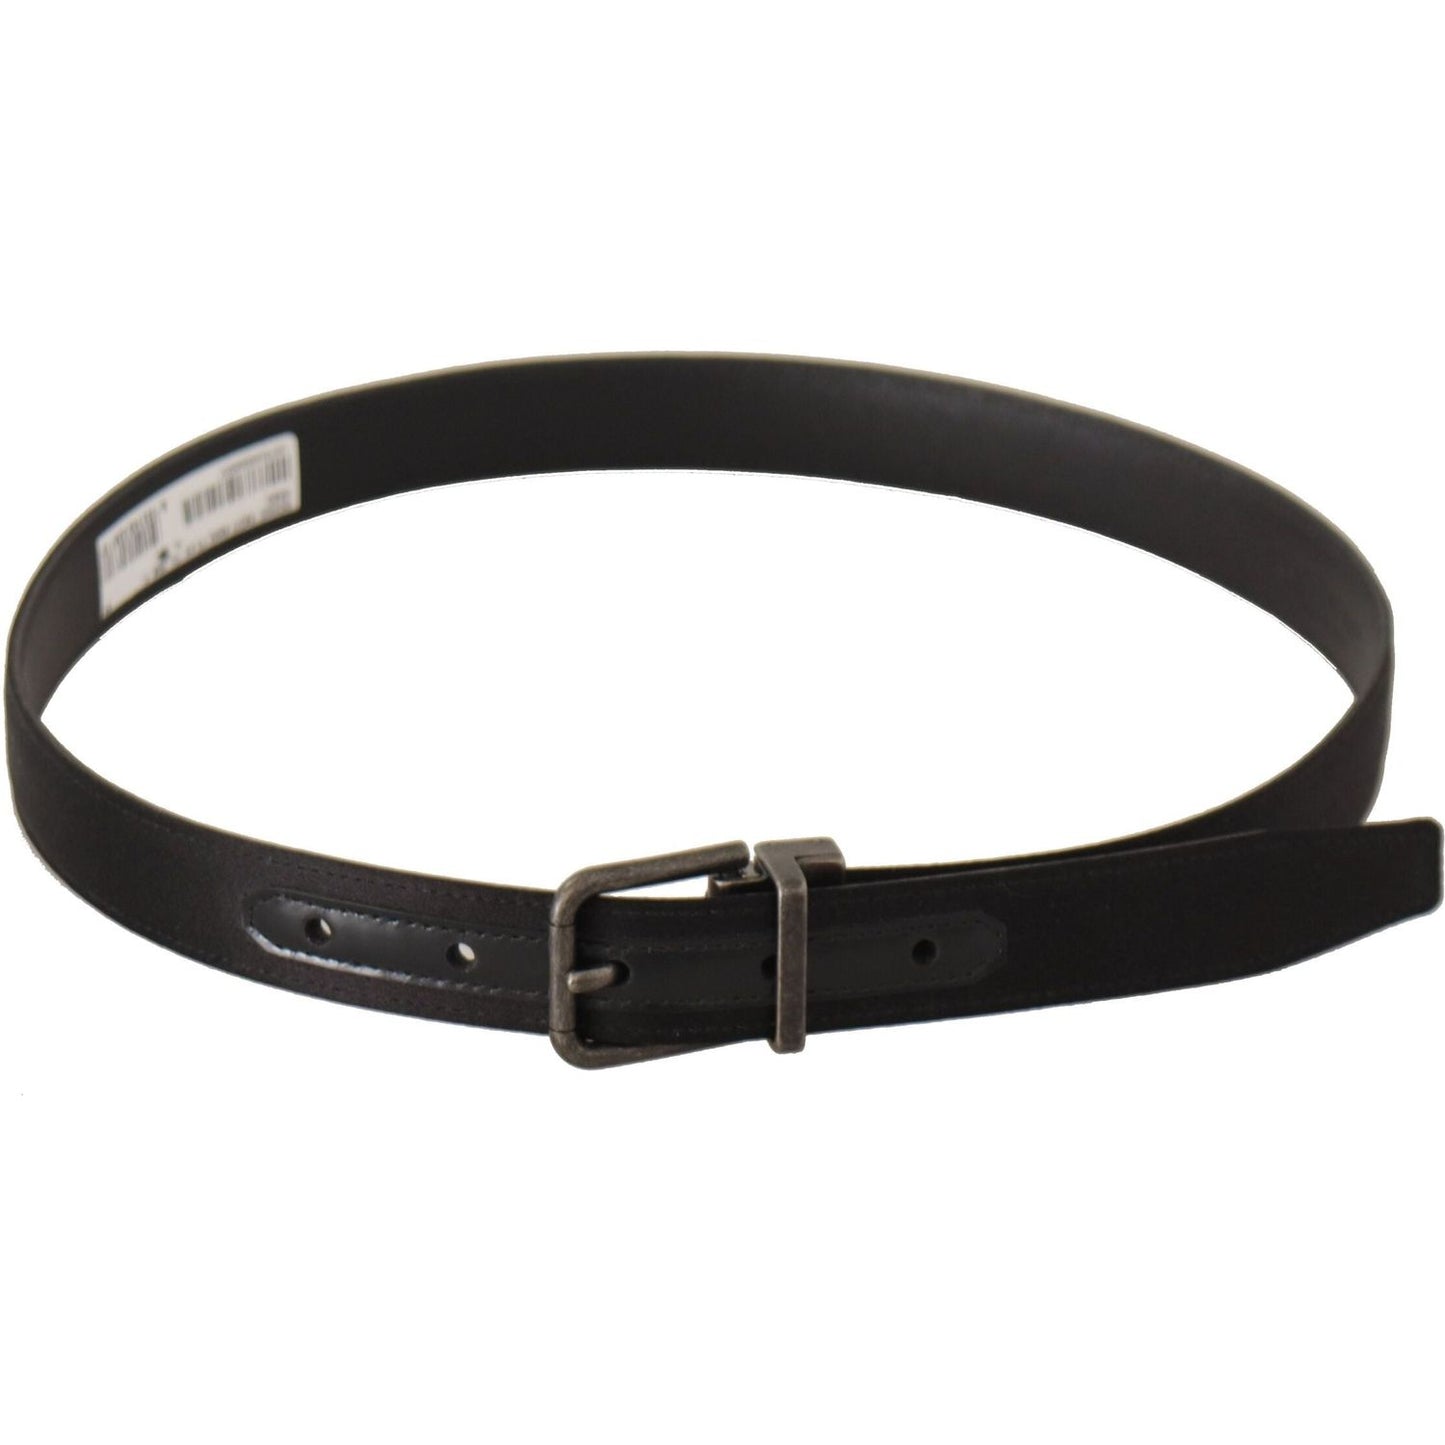 Dolce & Gabbana Elegant Black Leather Belt with Metal Buckle black-calfskin-leather-vintage-metal-buckle-belt